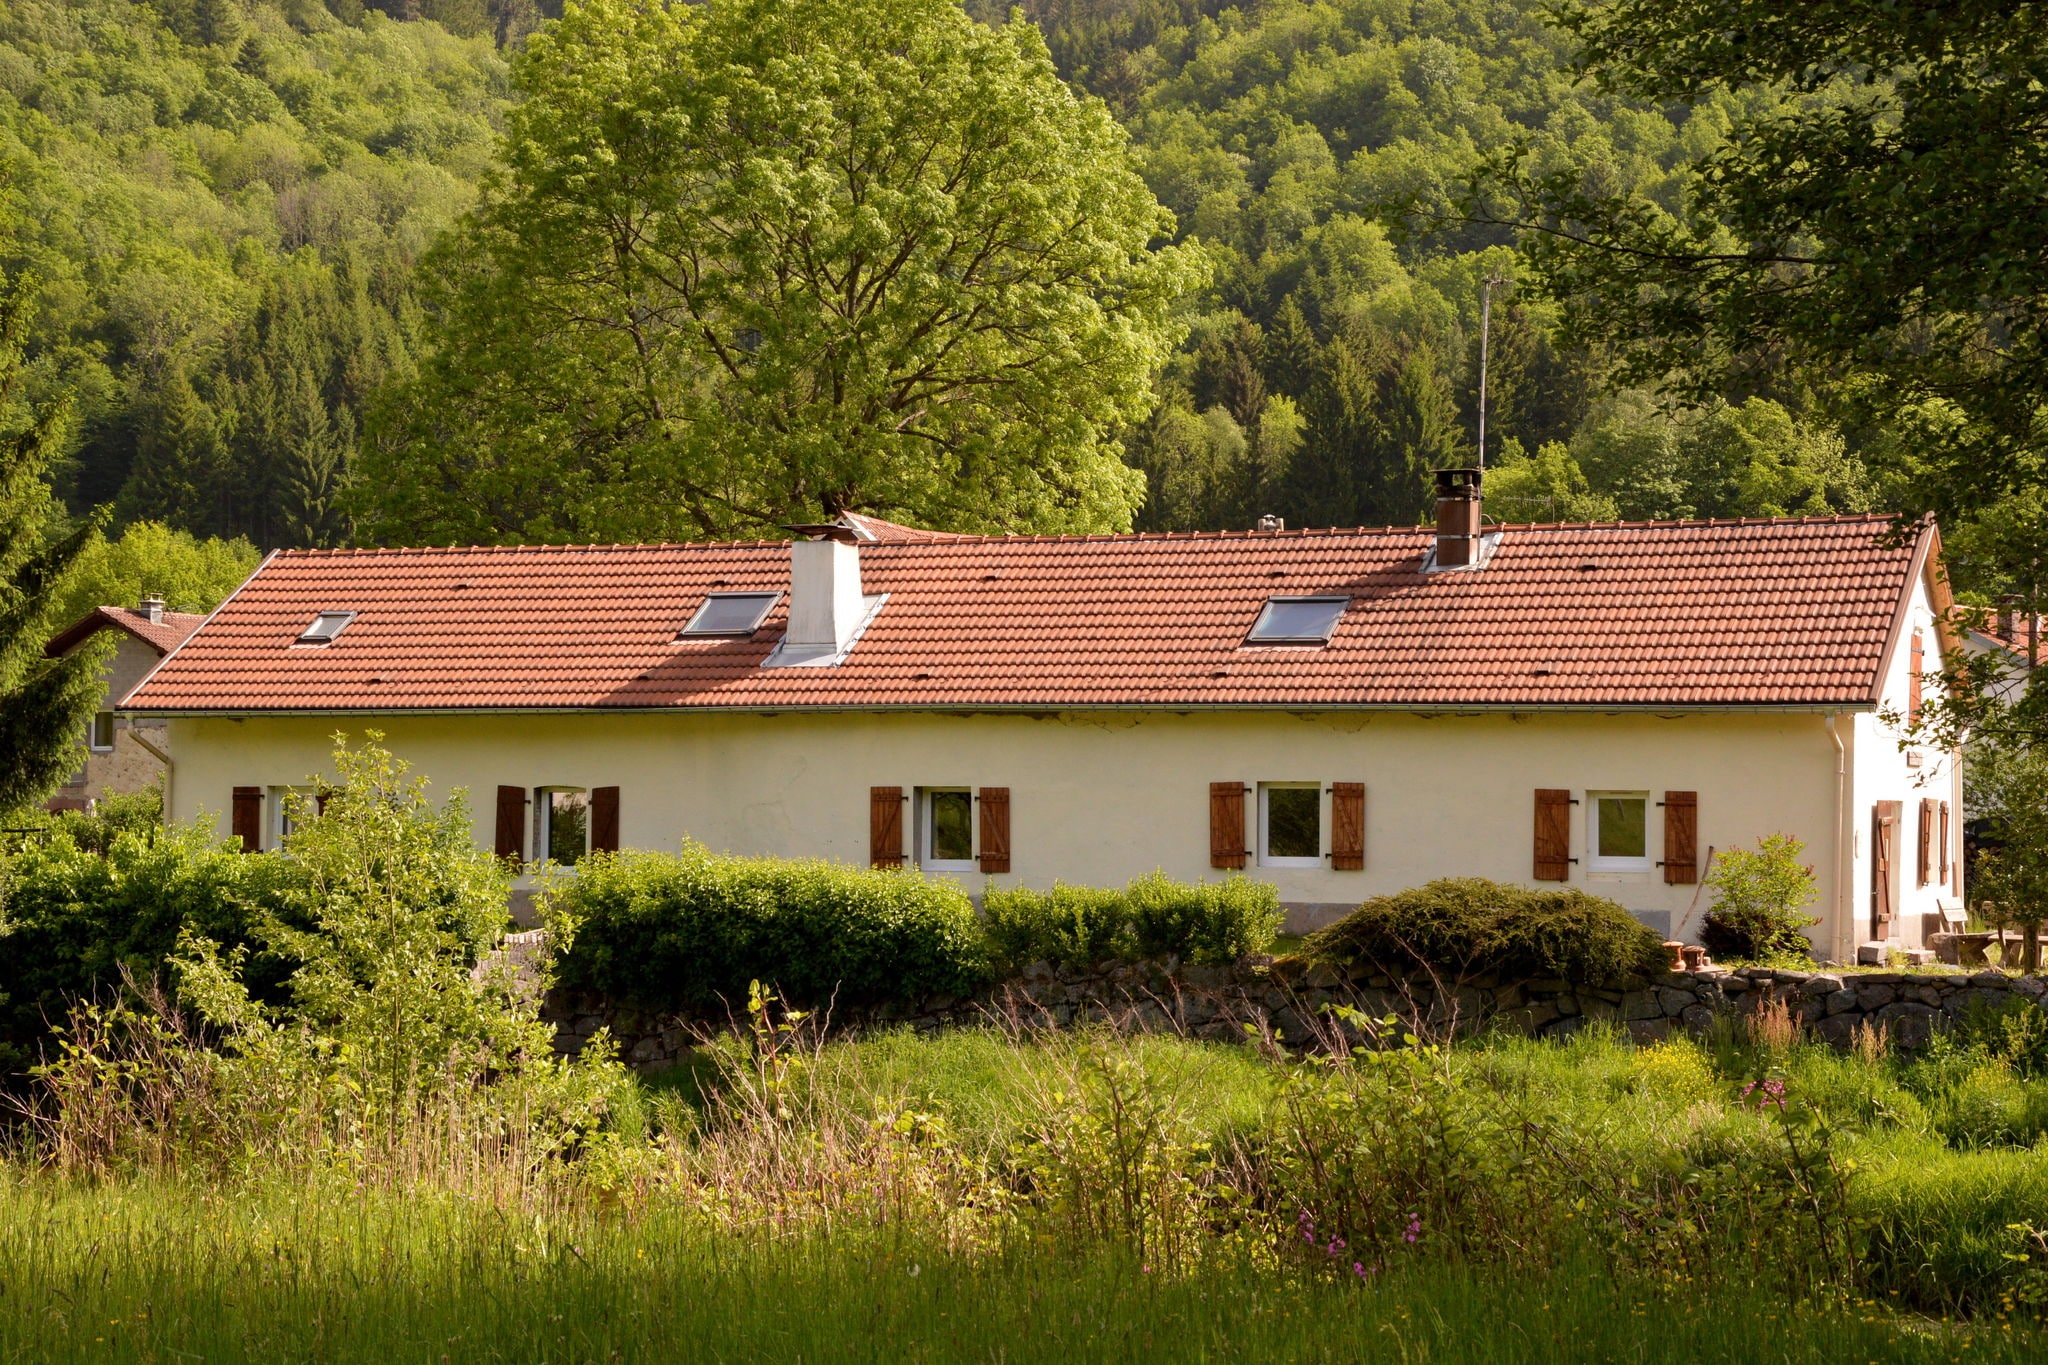 Vrijstaand huis in Lotharingen met weelderig uitzicht